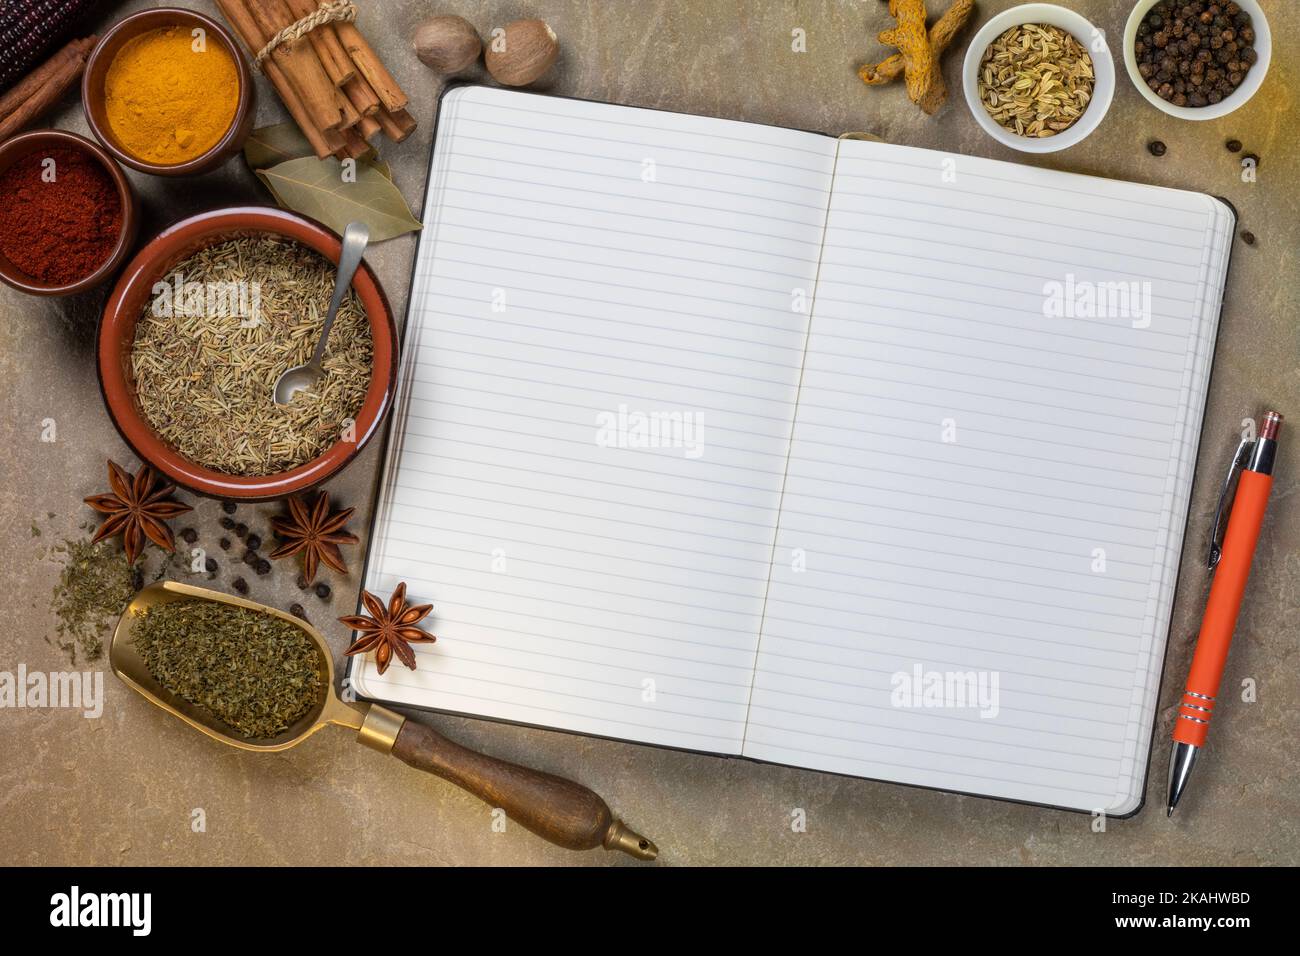 Especias para cocinar utilizadas para agregar sabor y condimentos con un libro de recetas abierto con páginas en blanco - espacio para texto. Foto de stock